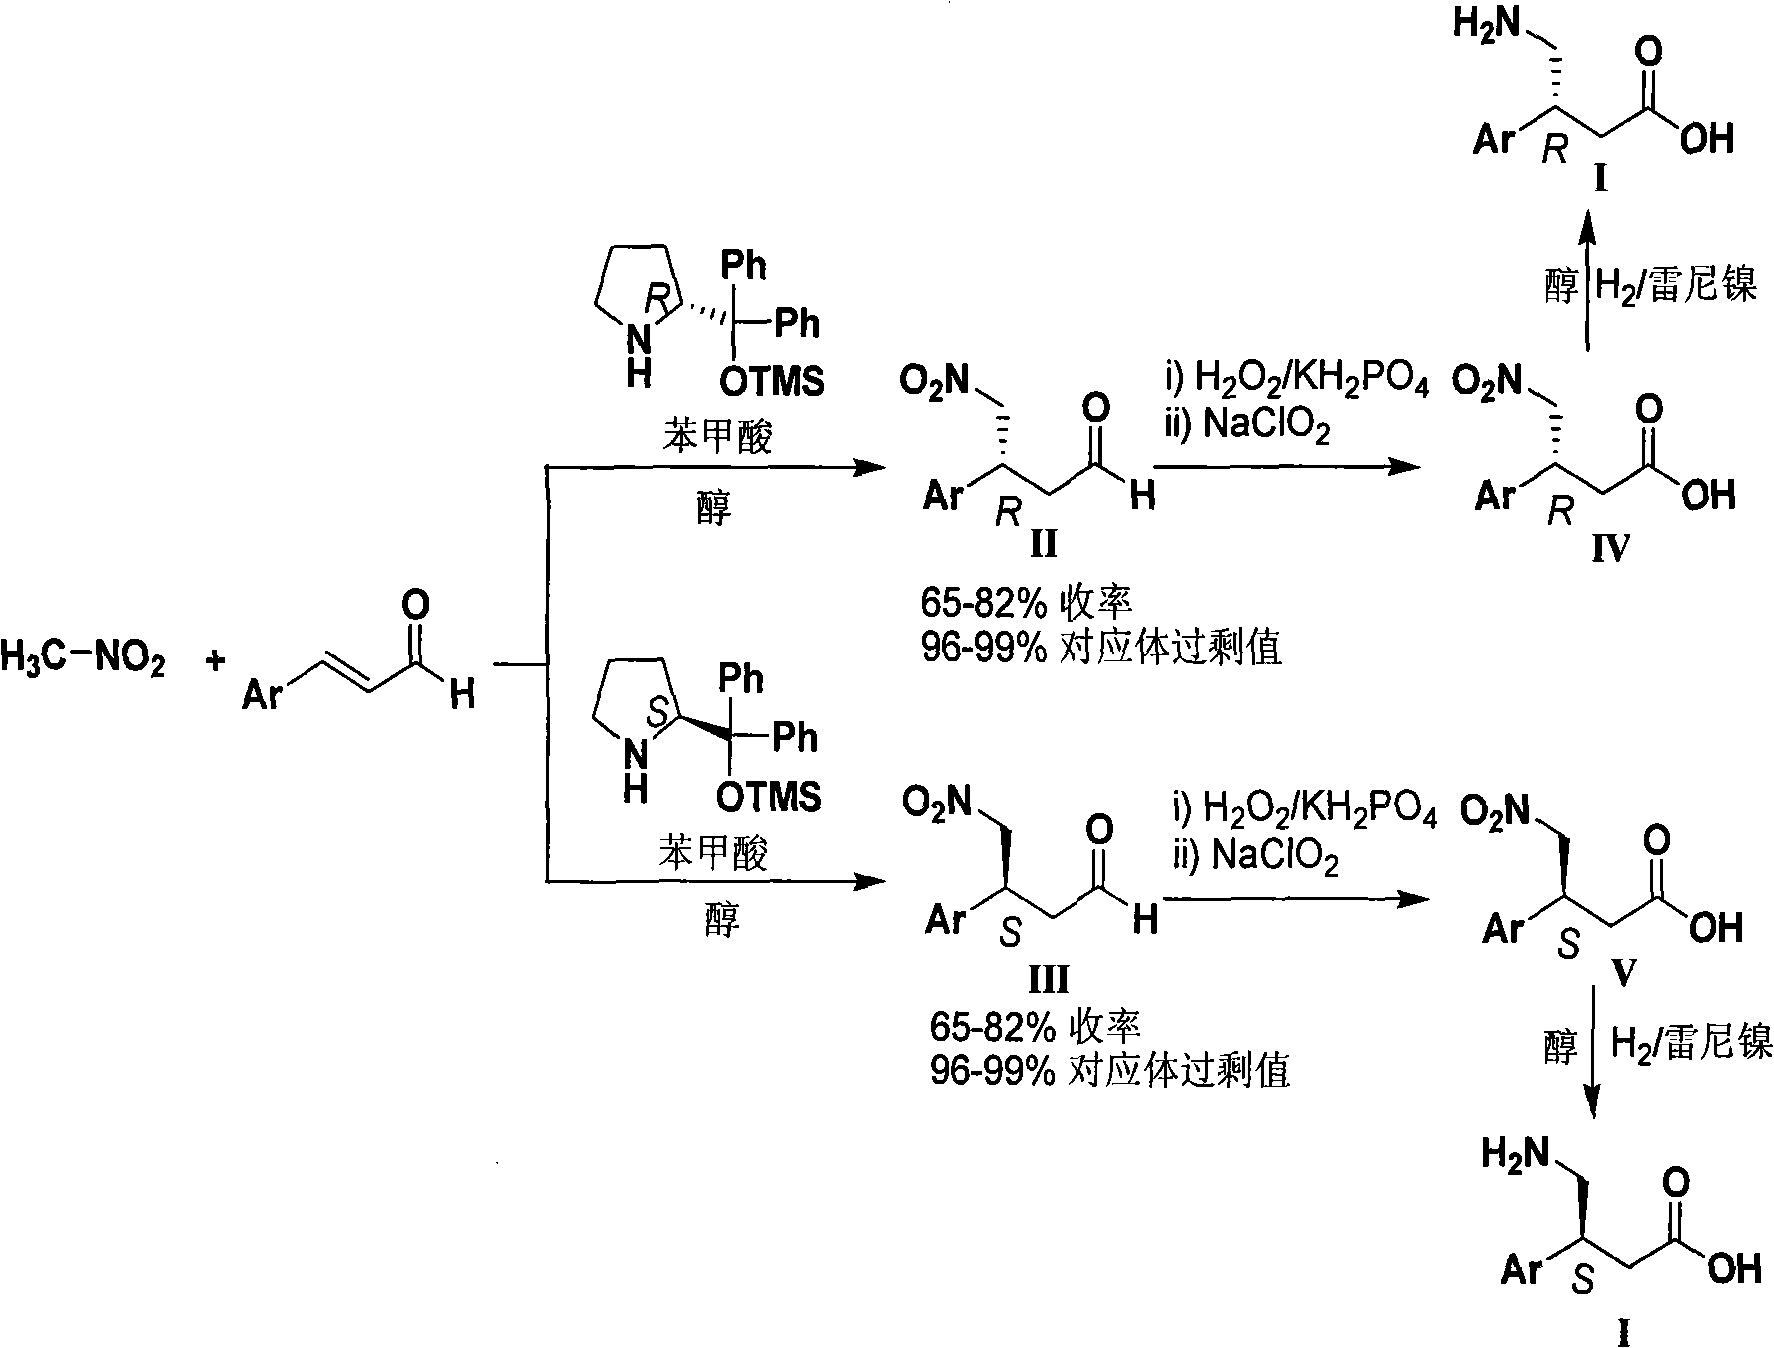 Novel method for synthesizing chiral beta-aryl-gamma-aminobutyric acid compounds